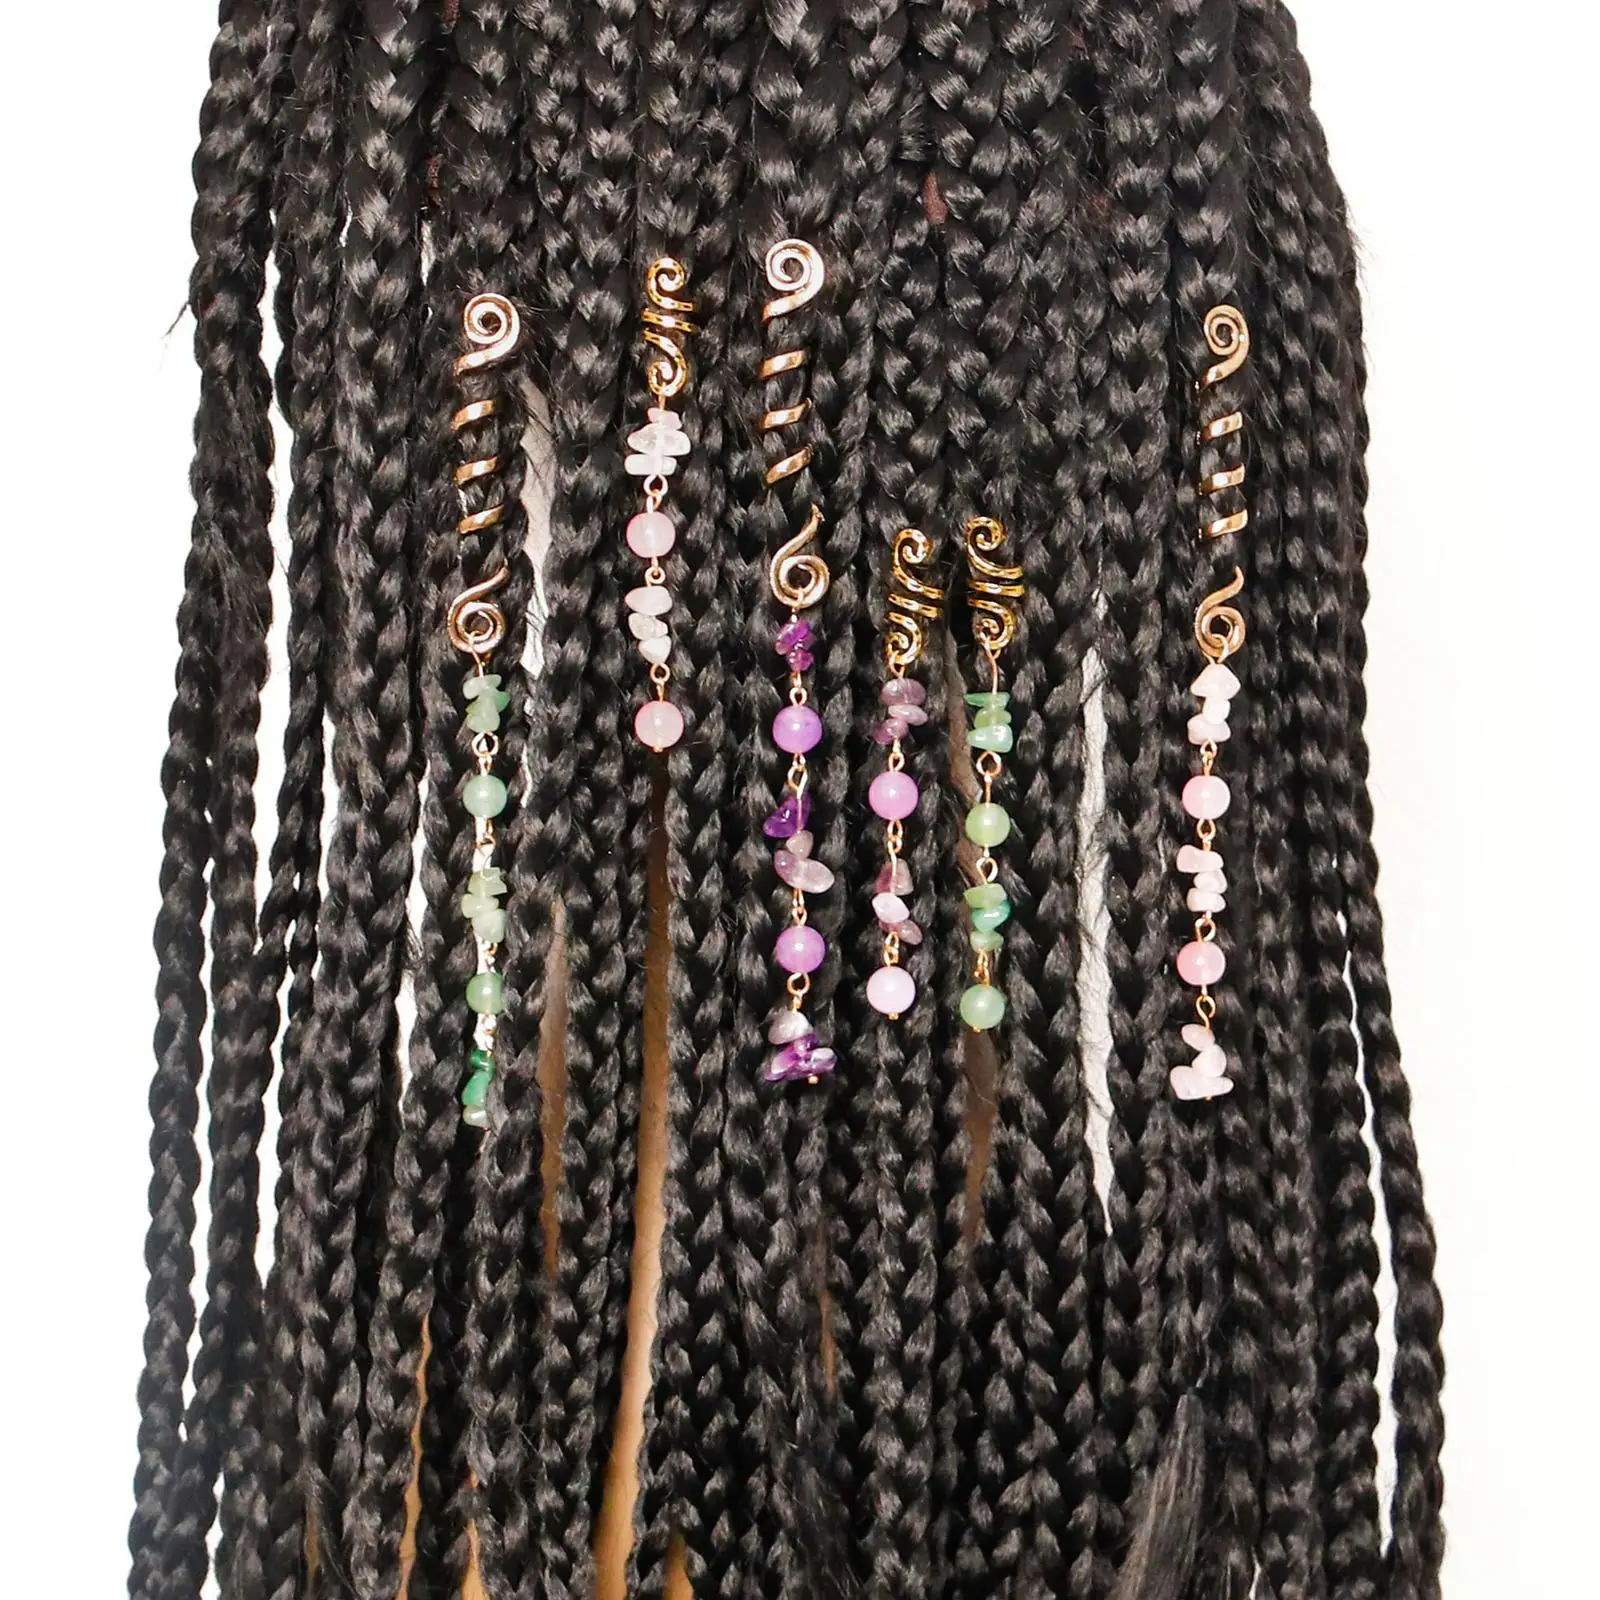 6Pcs Metal Hair Jewelry Hair Clips Pendants Hair Spiral Braid Decoration Braiding DIY Dreadlock Accessories Hair Cuffs for Girls